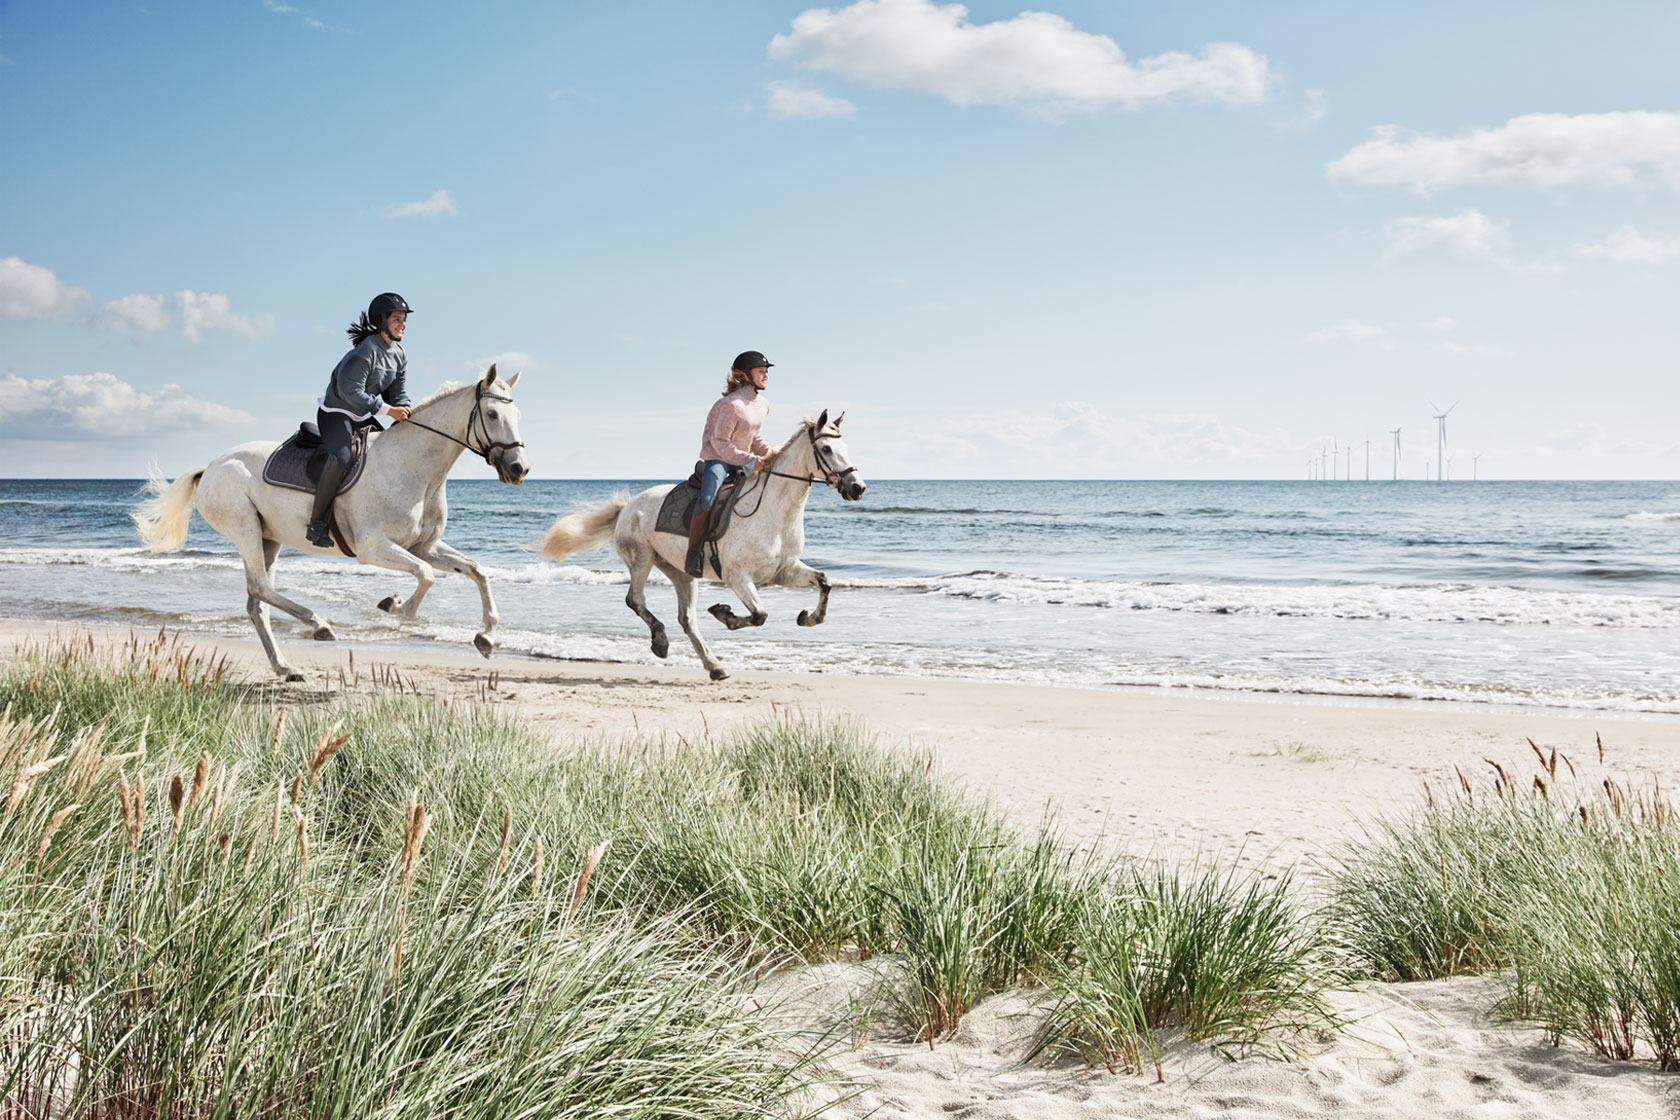 Två ryttare rider sina hästar på en strand med vindkraftverk i bakgrunden